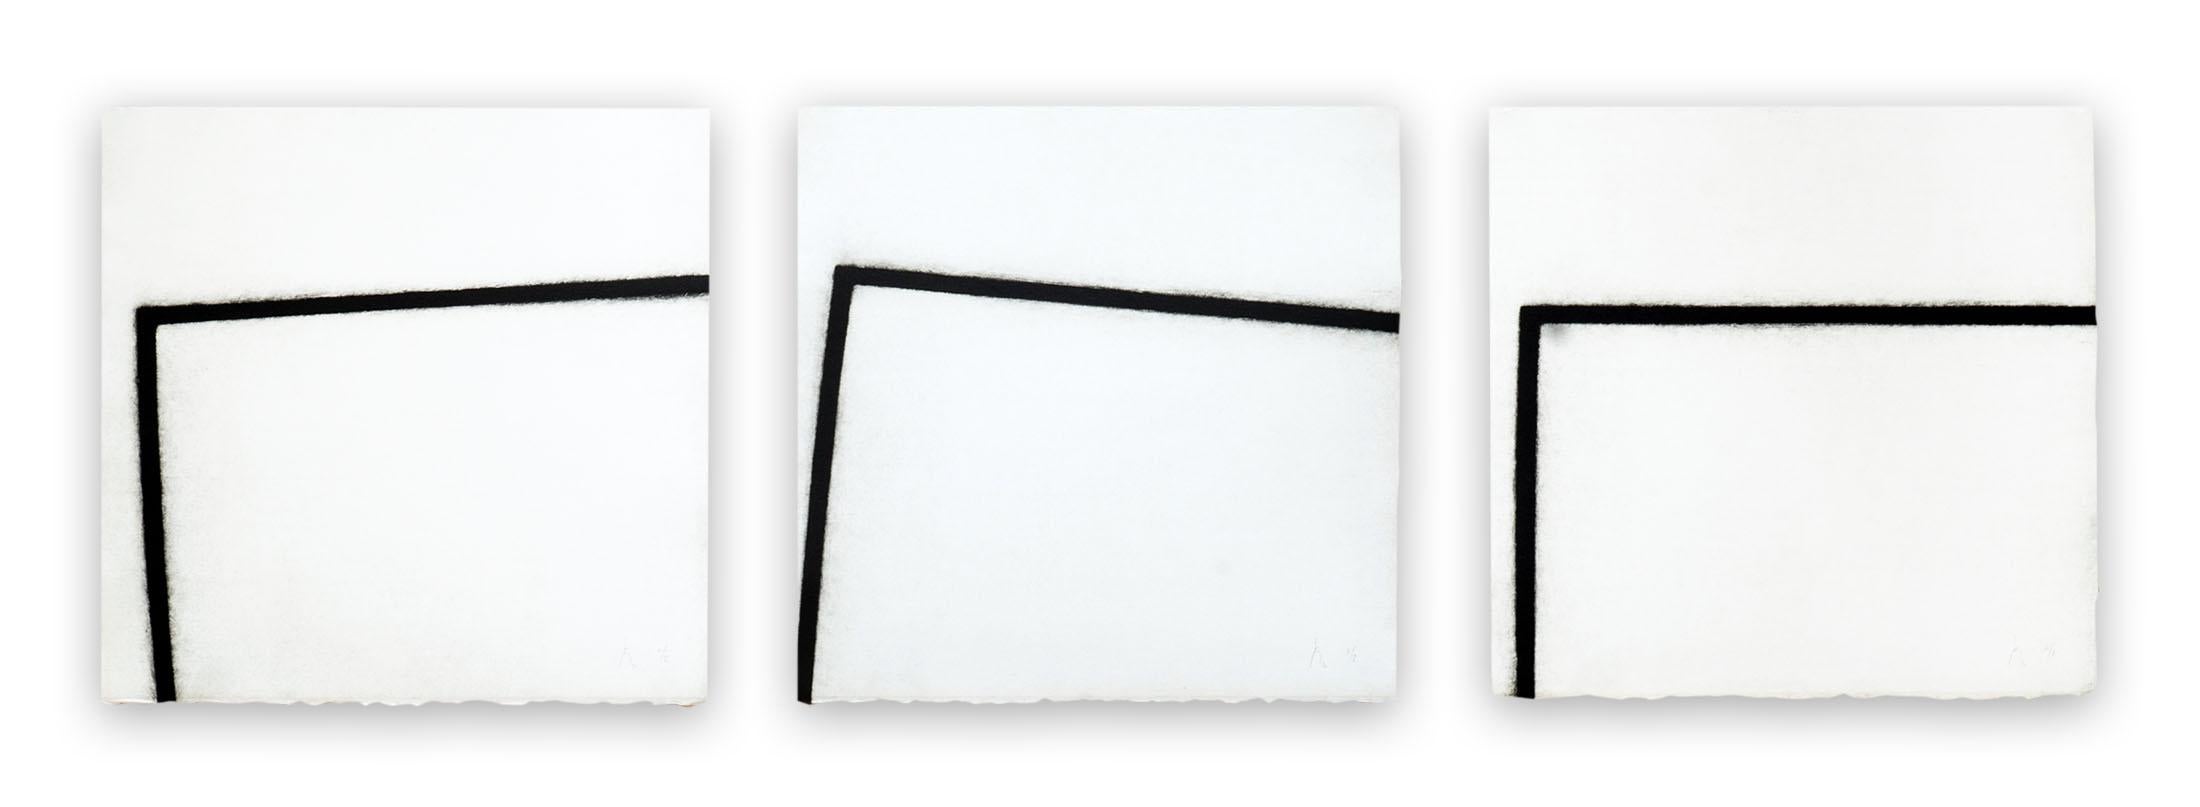 Pierre Muckensturm Abstract Print – 201C0011 ABC (Abstrakter Druck)